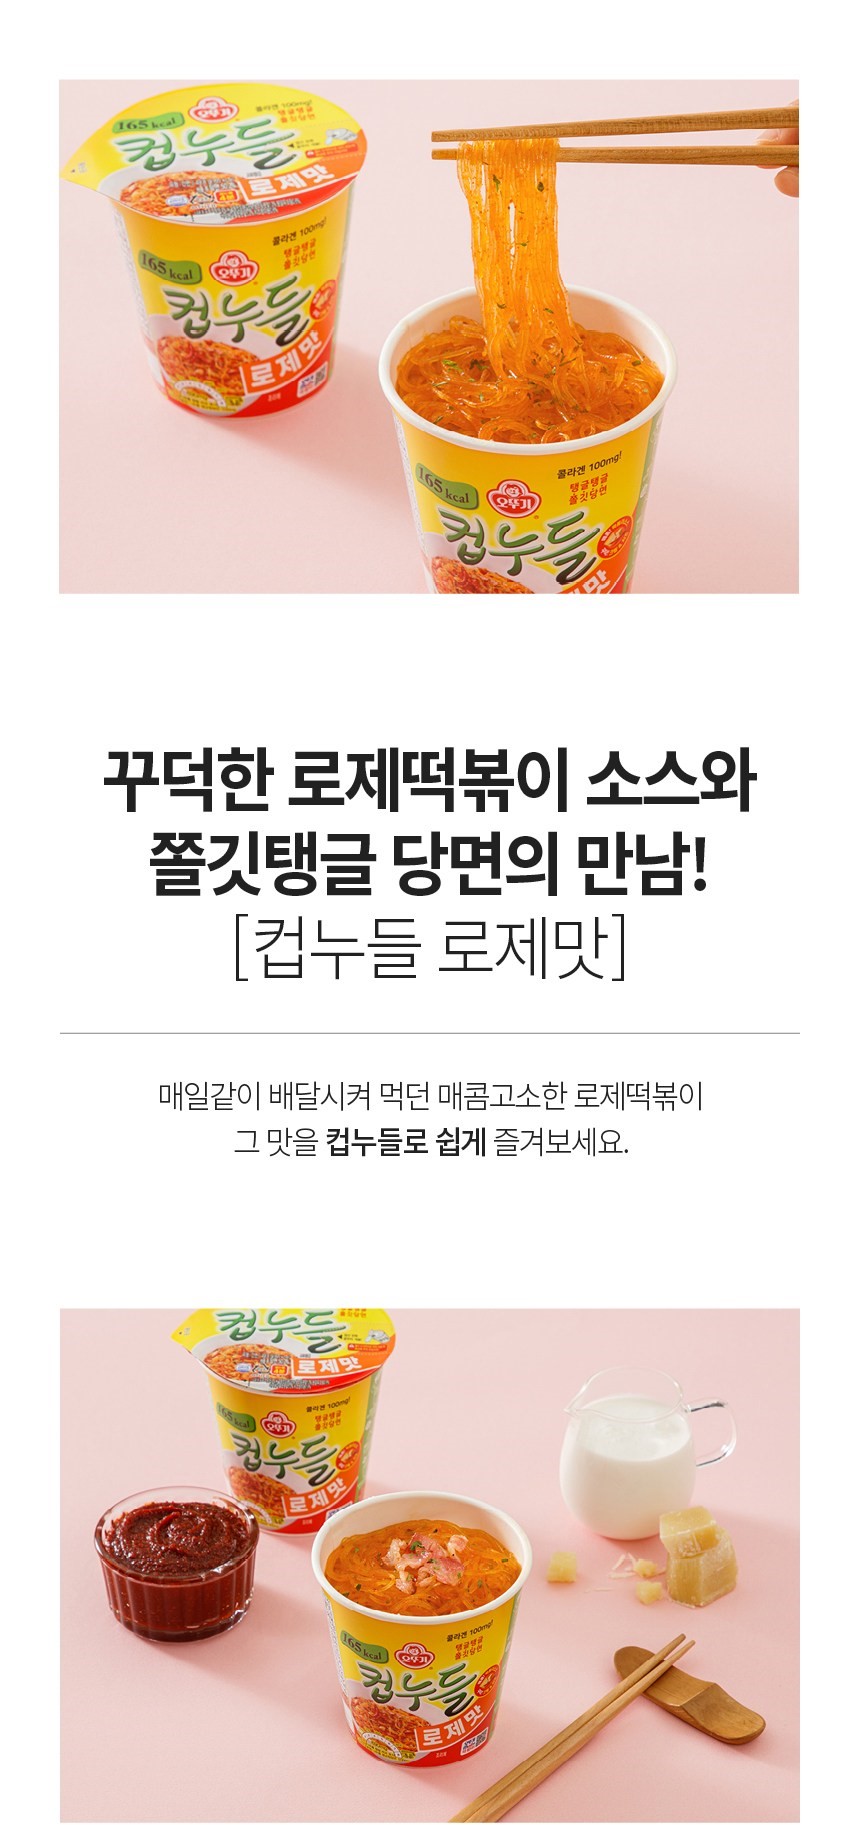 韓國食品-[오뚜기] 컵누들 (로제맛) 49.8g